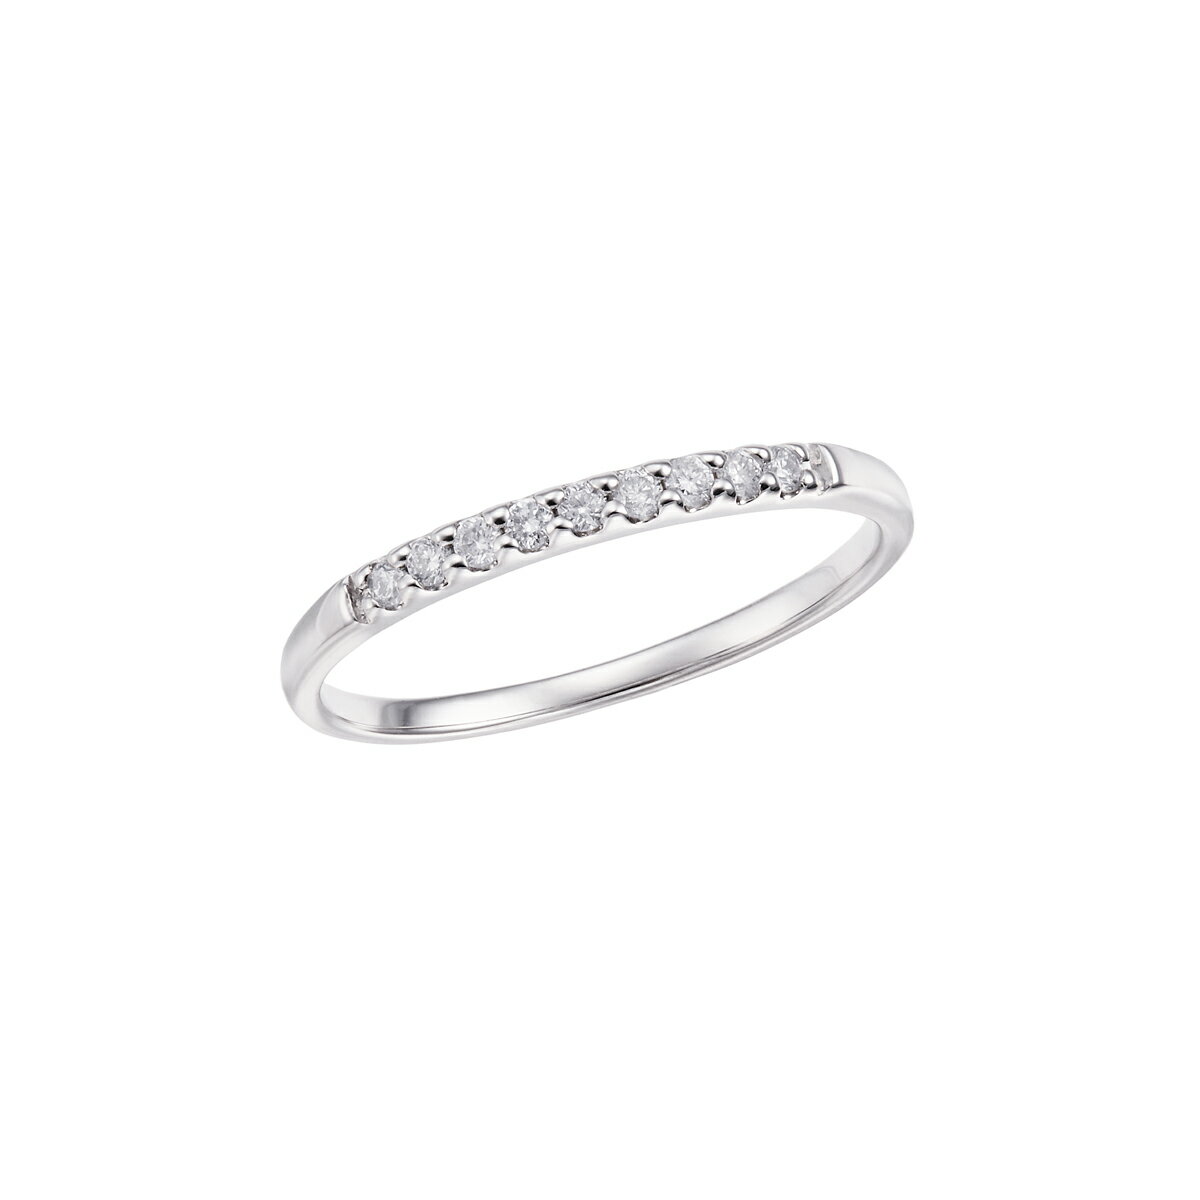 ハートリング ピンキーリング 10金 指輪 ダイヤモンド ピンキーリング ファランジリング ミディリング K10 diamond ring 通販 おすすめ プレゼント